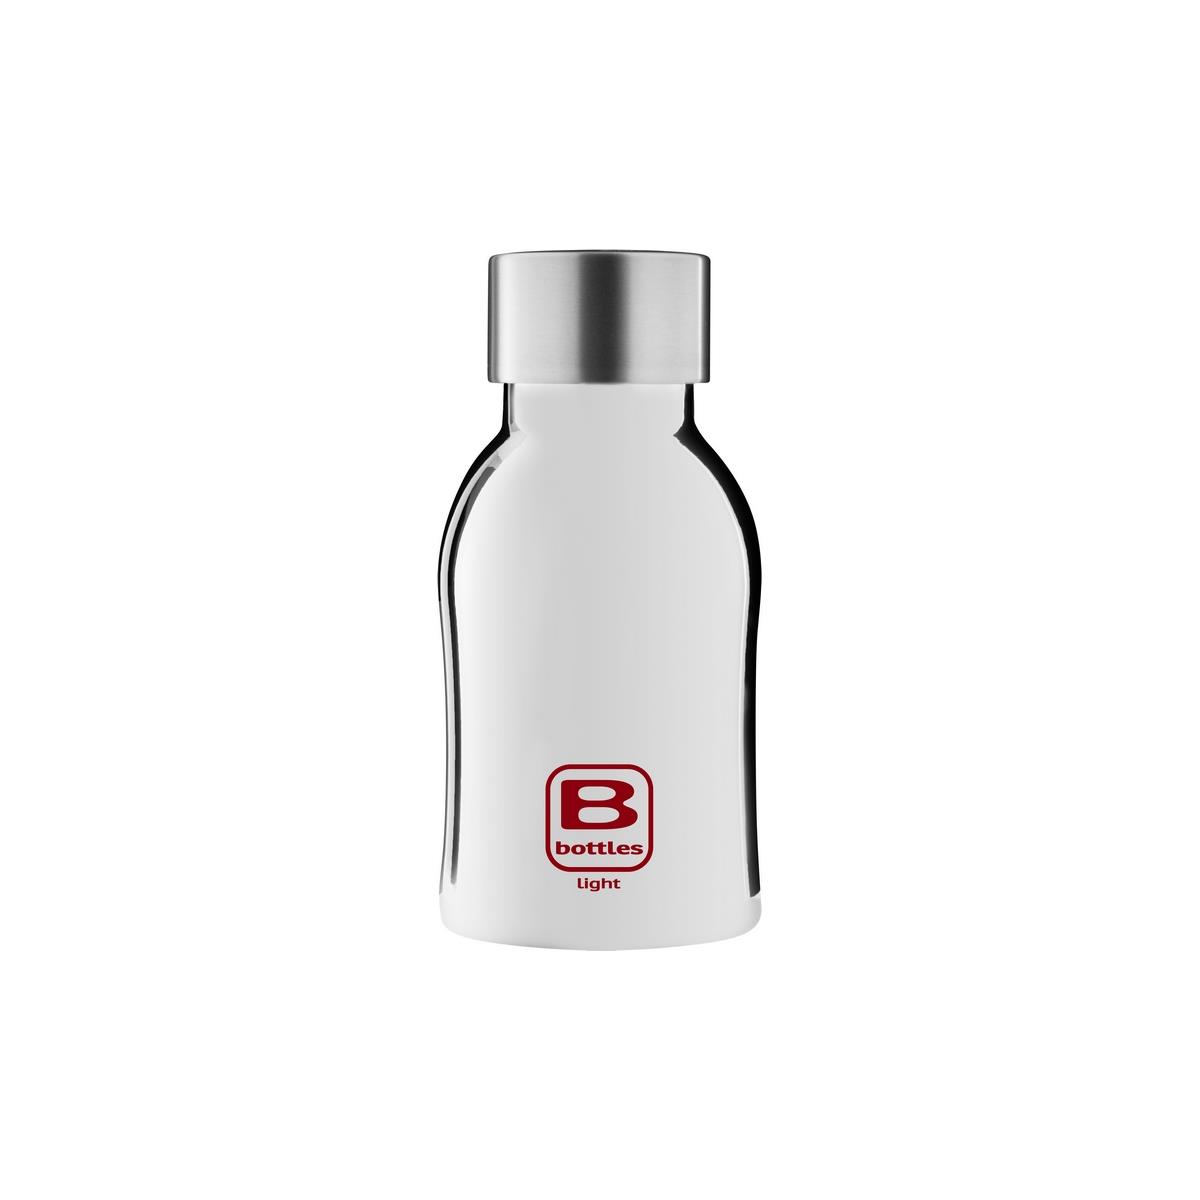 B Bottles Light - Silver Lux - 350 ml - Bottiglia in acciaio inox 18/10 ultra leggera e compatta